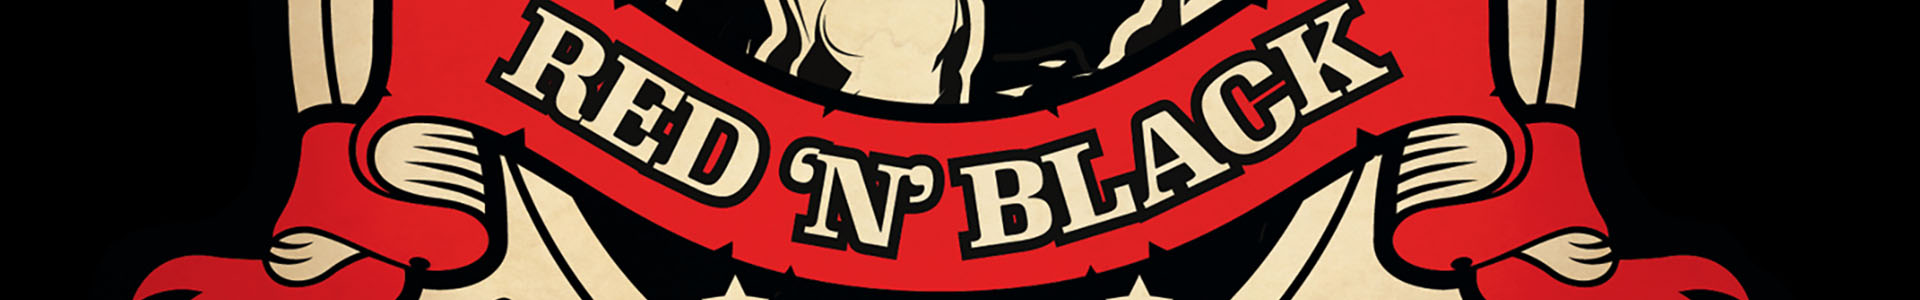 New Beer: TROOPER RED ‘N’ BLACK